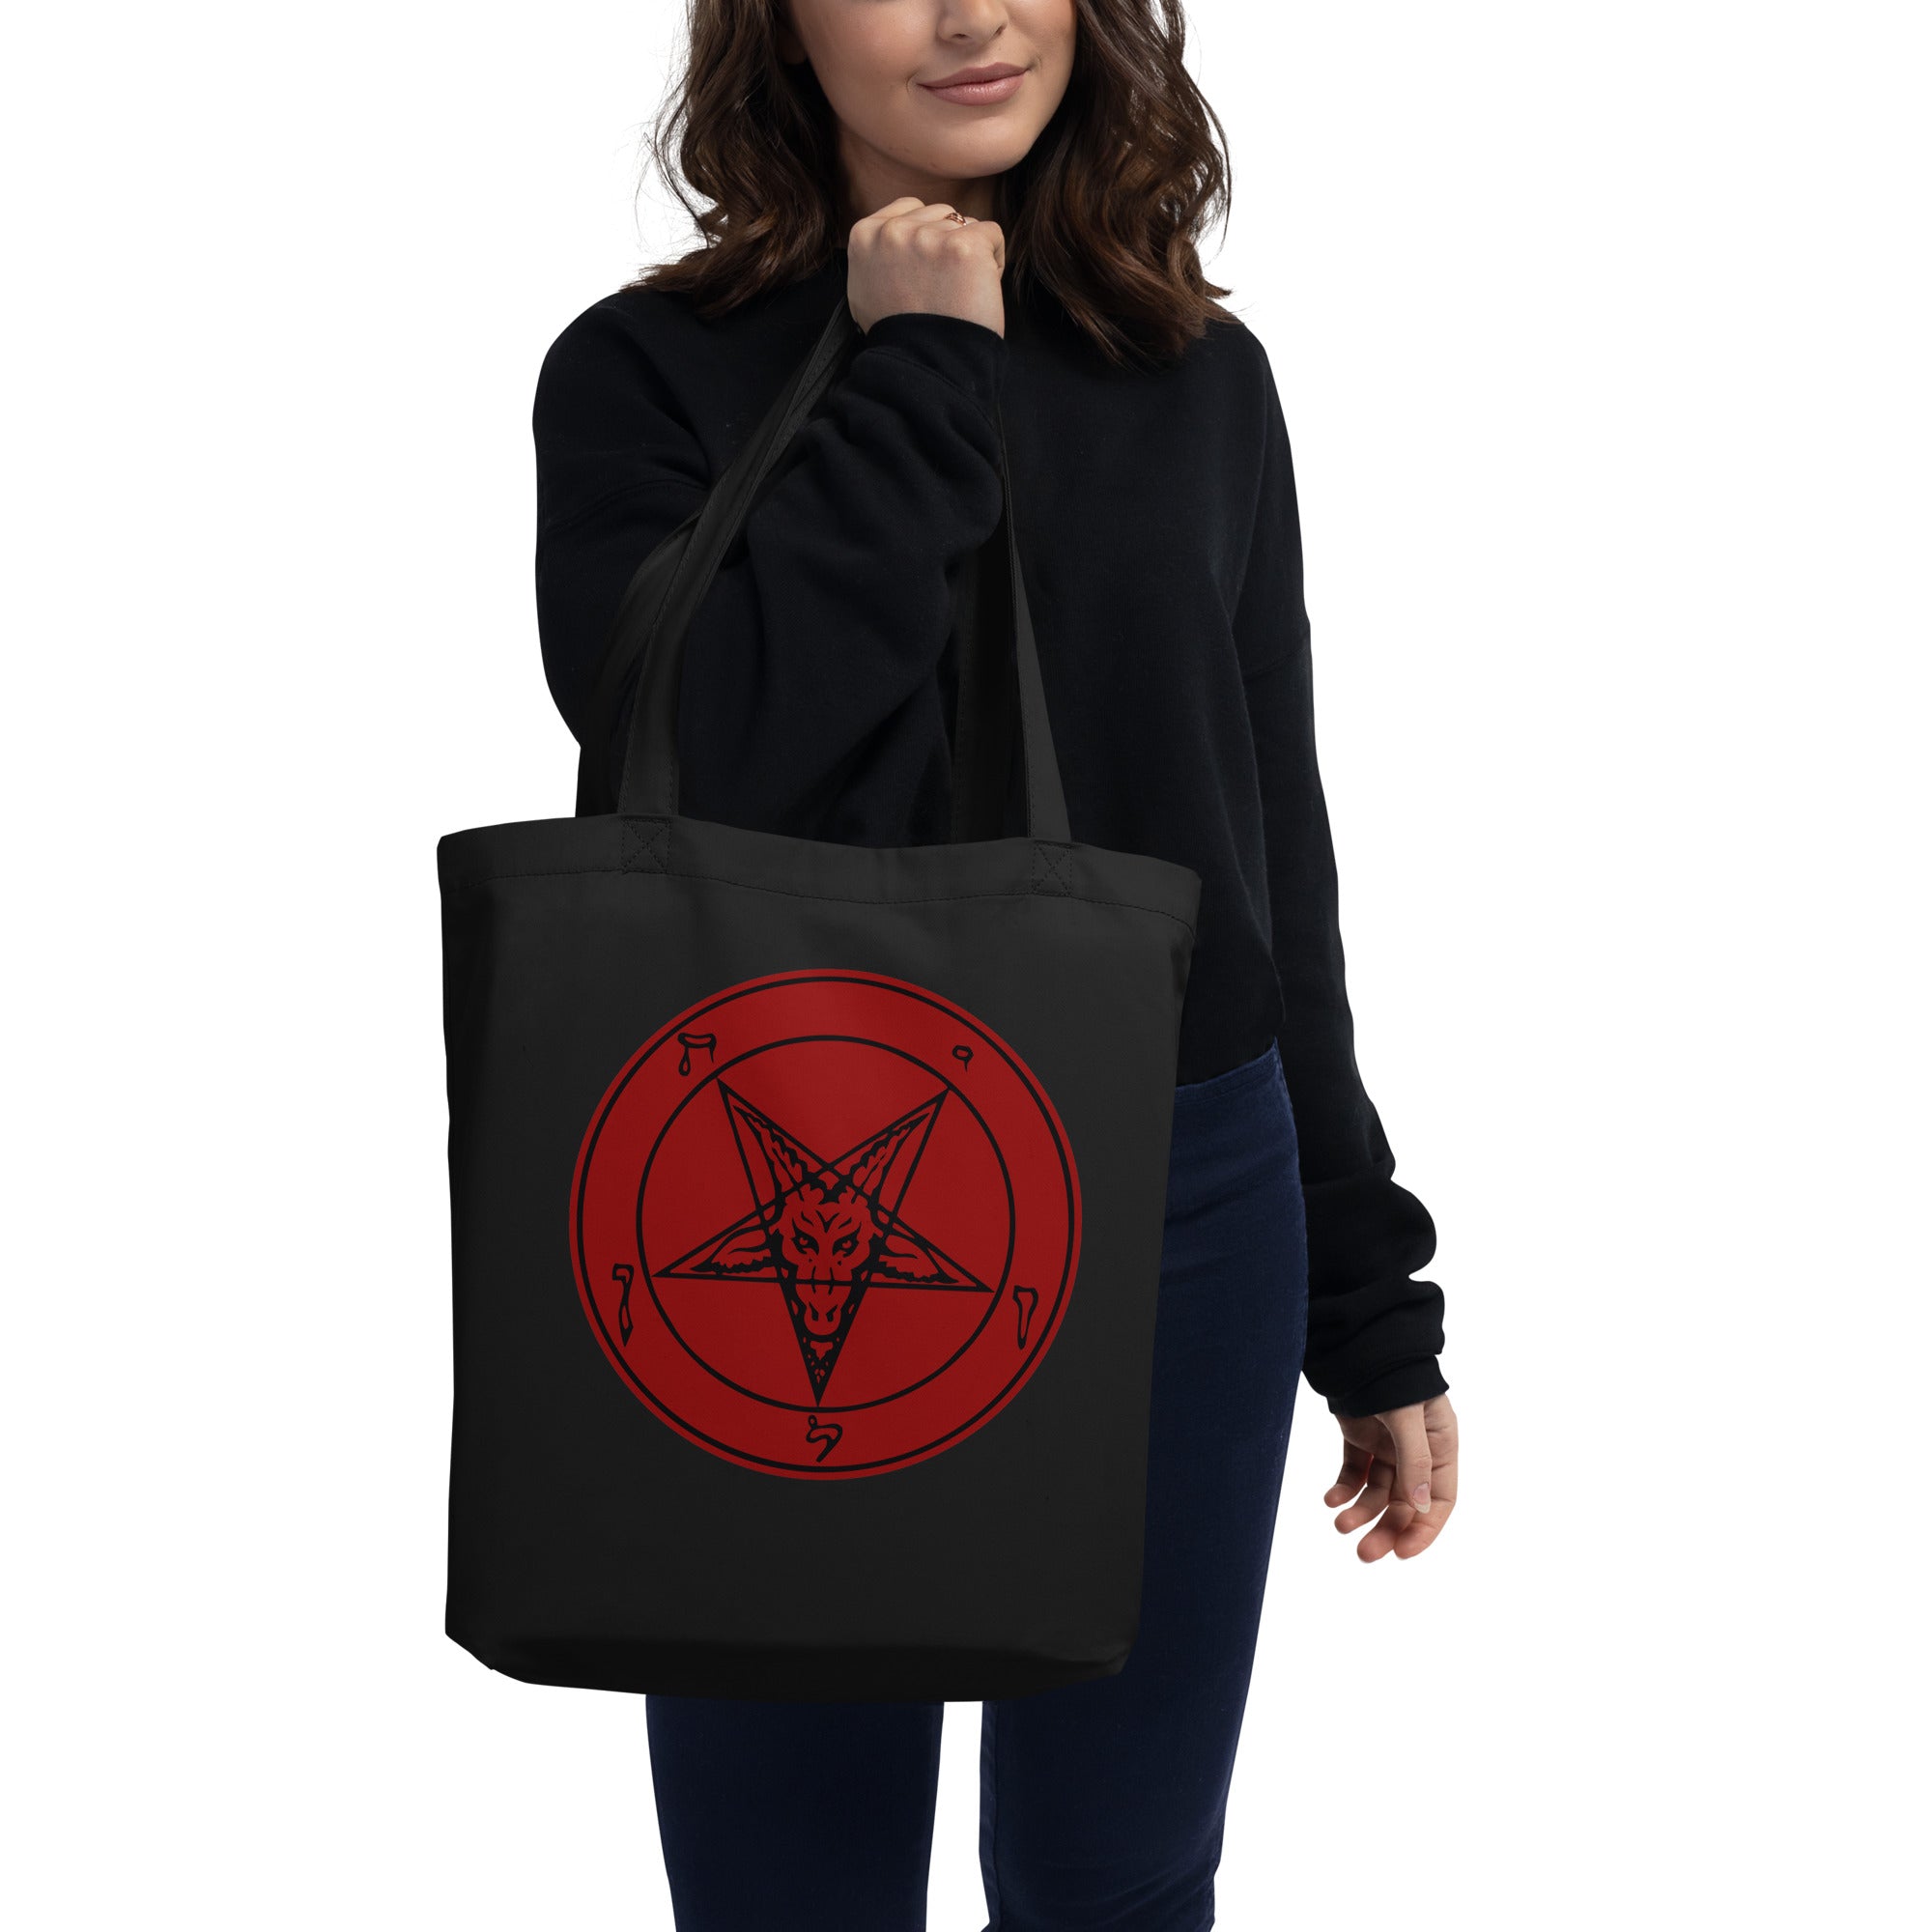 Solid Red Sigil of Baphomet Church of Satan Pentagram Eco Tote Bag - Edge of Life Designs